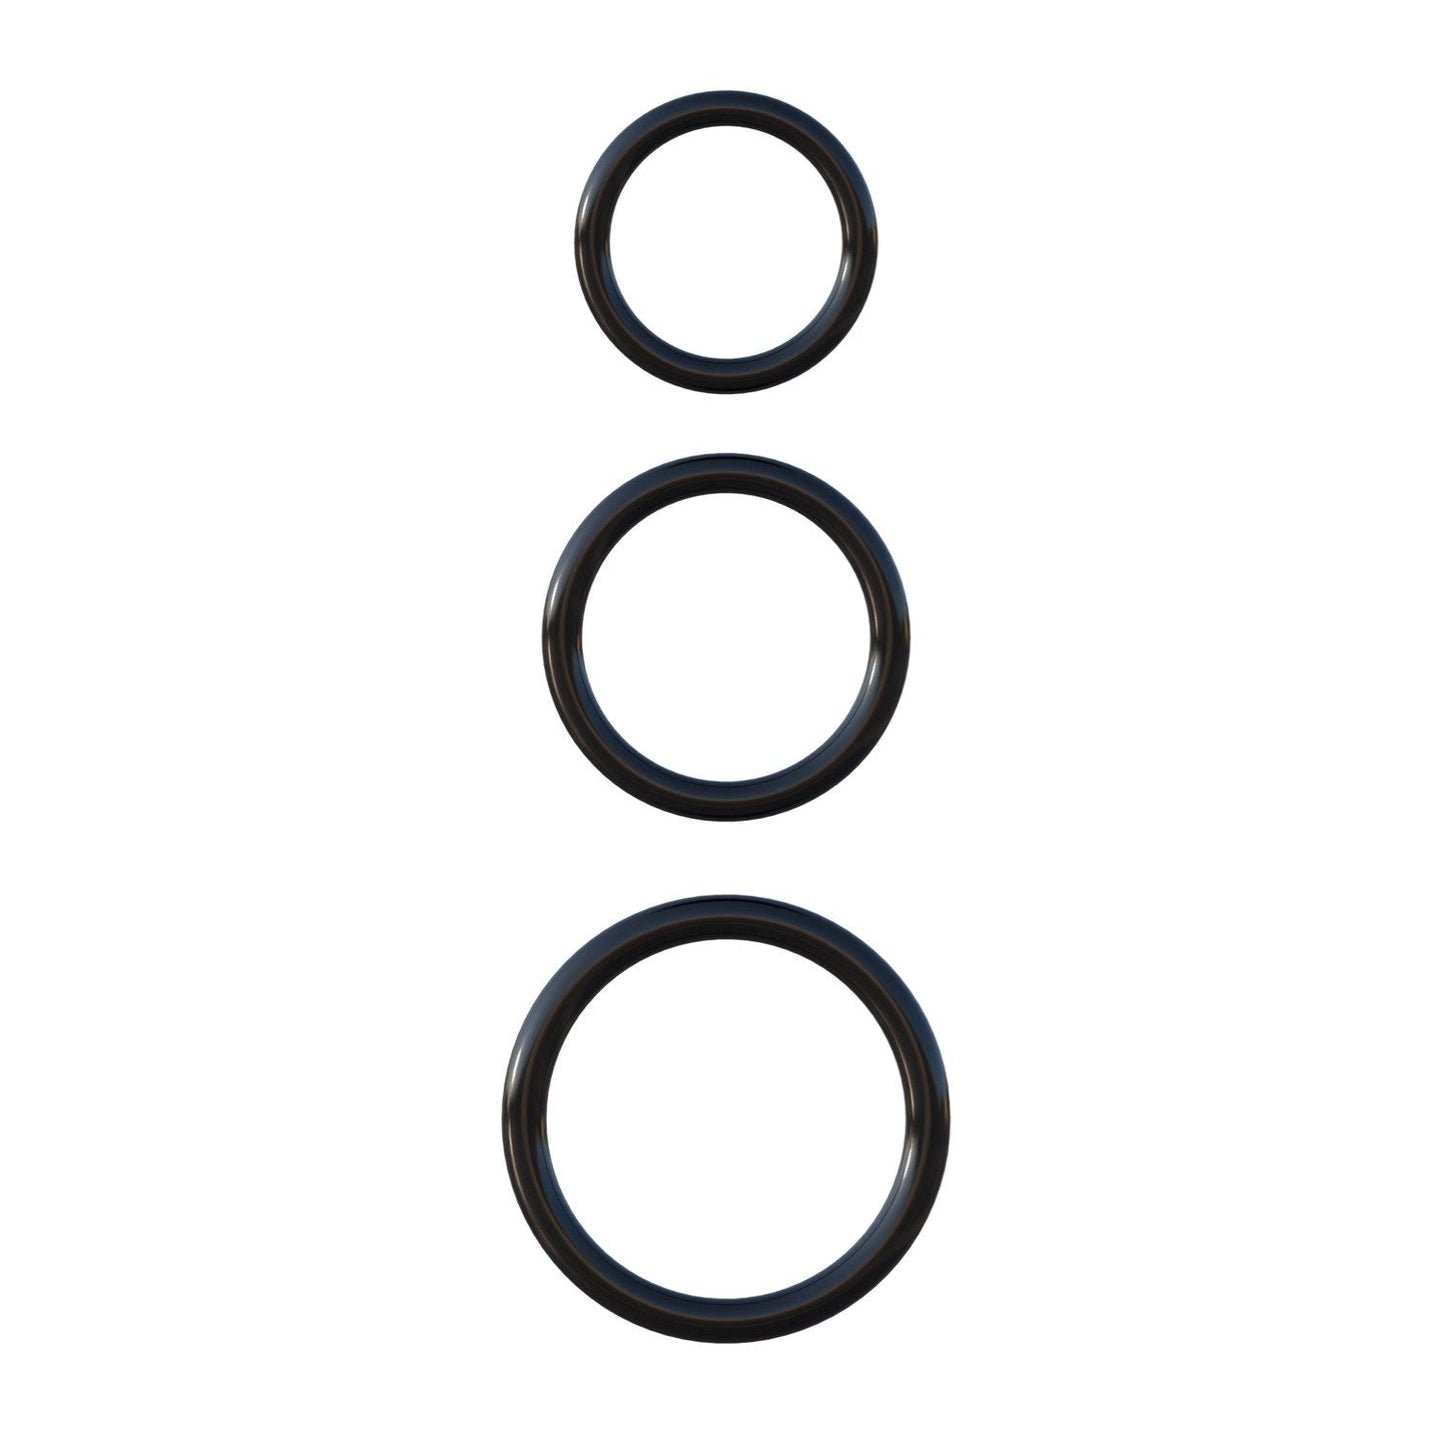 Silicone 3-Ring Stamina Set - Black Cock Rings - Set of 3